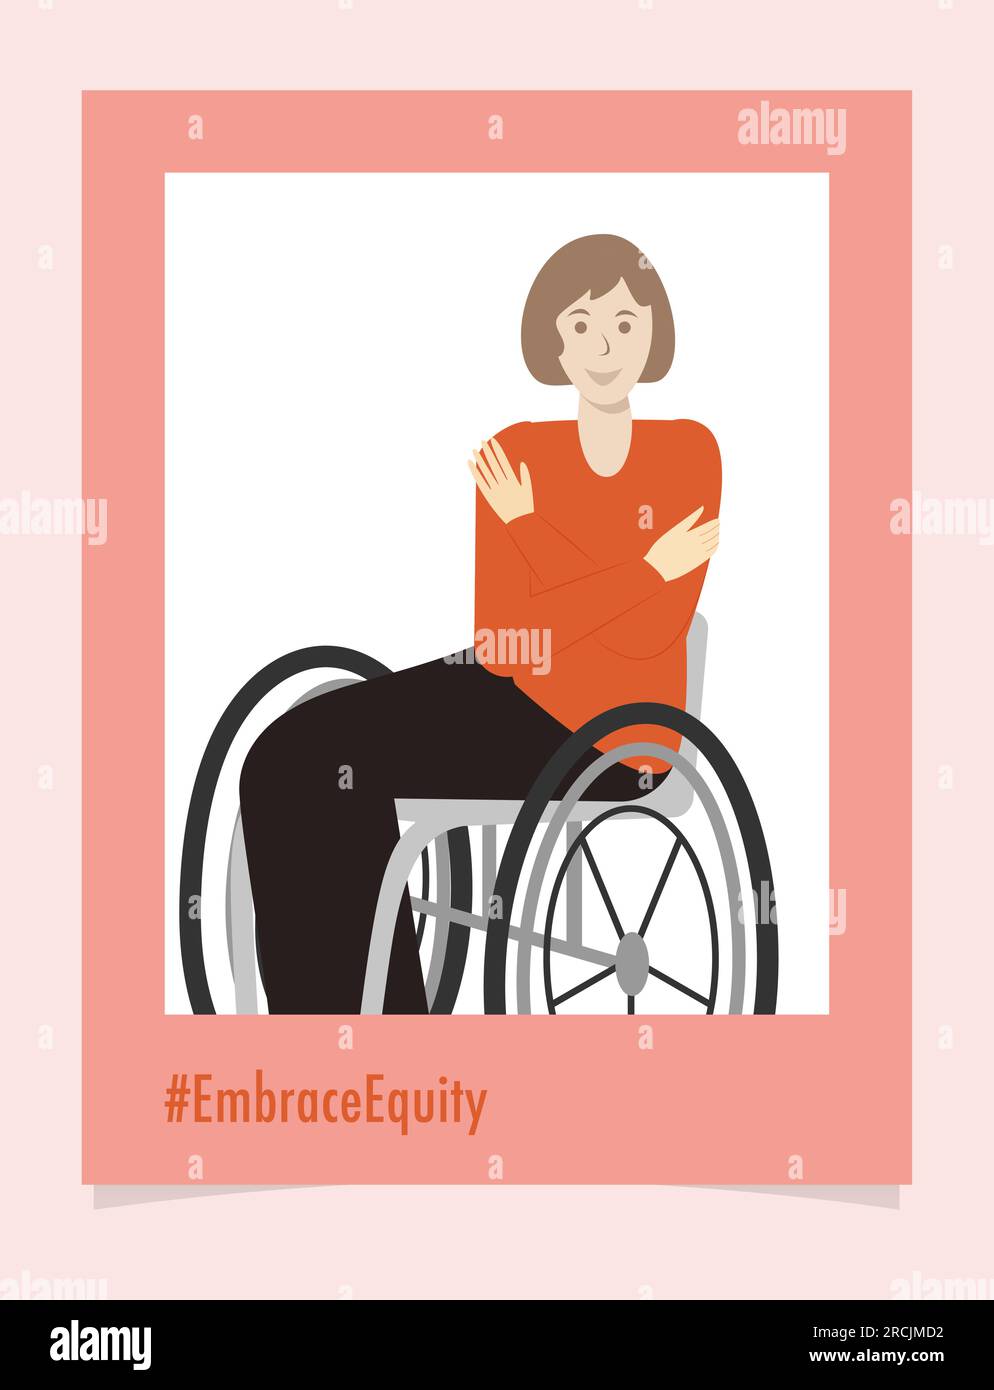 Beau portrait de personne handicapée #EmbraceEquity donner à l'équité une énorme étreinte. Journée internationale de la femme 2023 embrasser l'équité. L'égalité des chances est n. Illustration de Vecteur